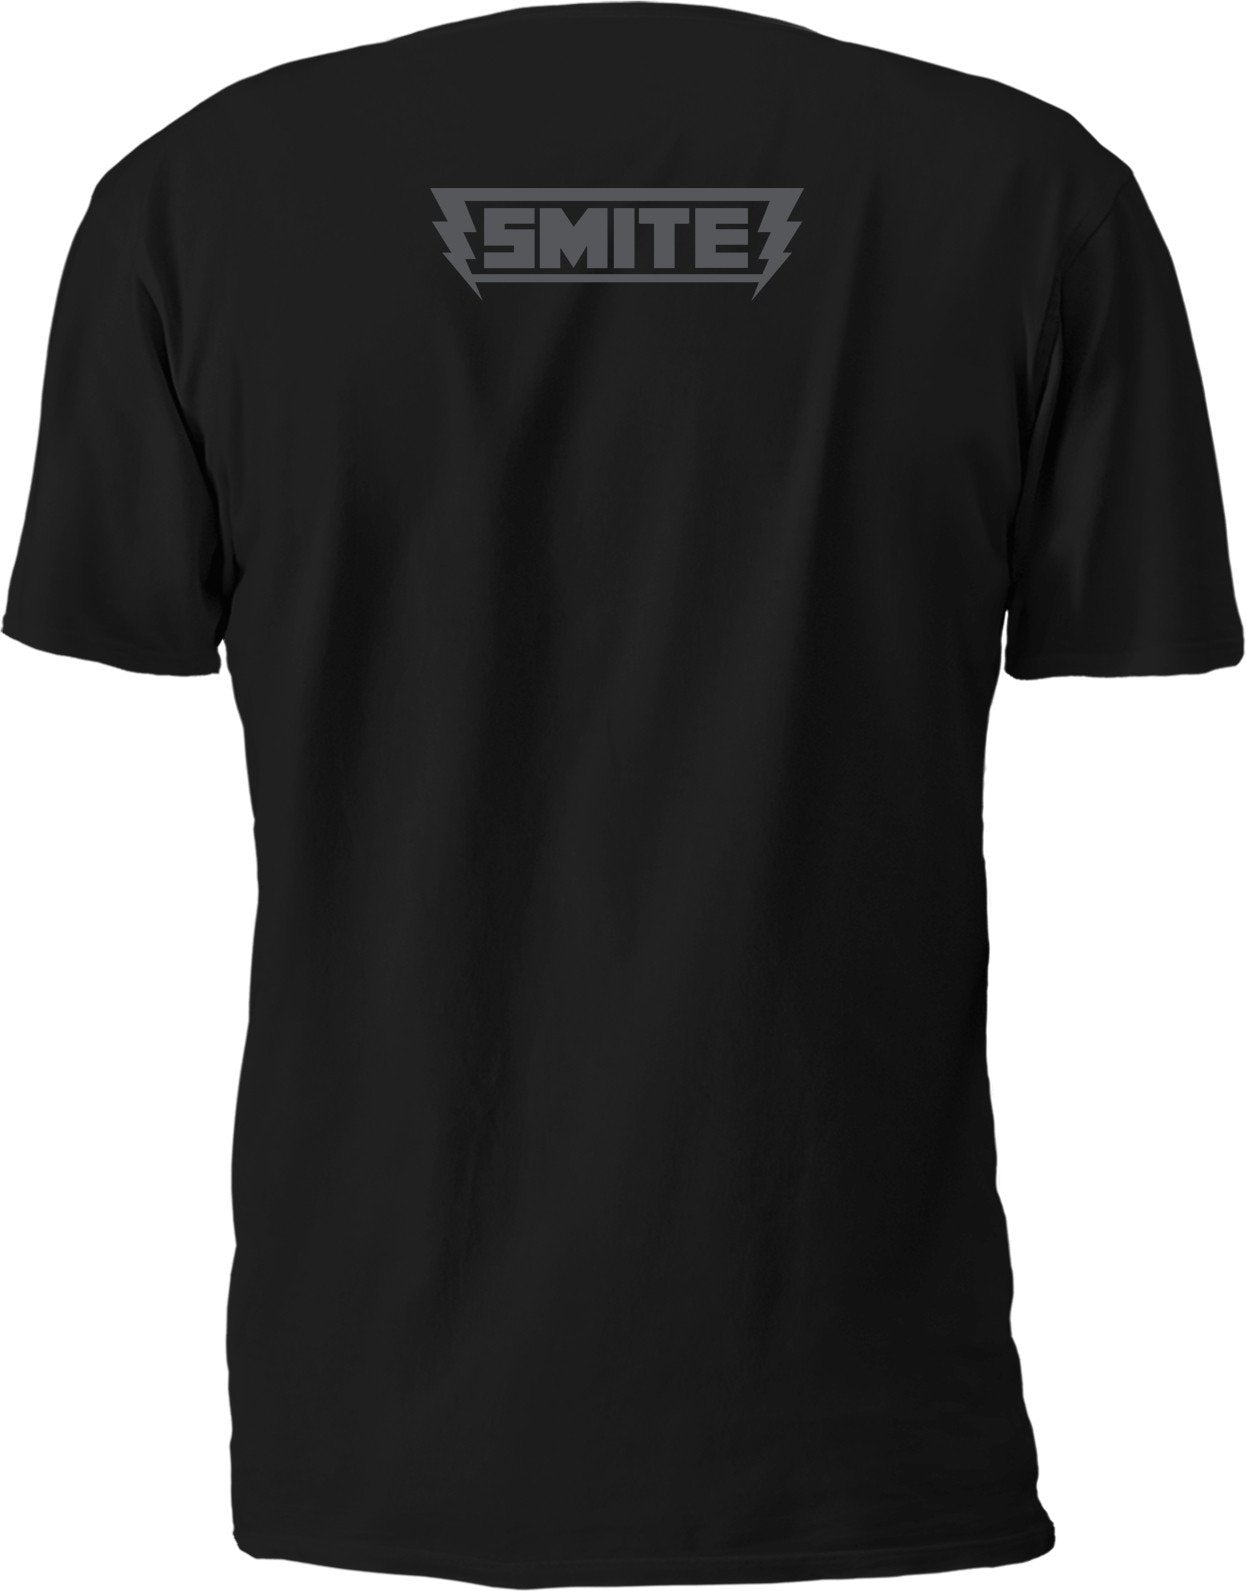 Smite Chinese Pantheon T-shirt